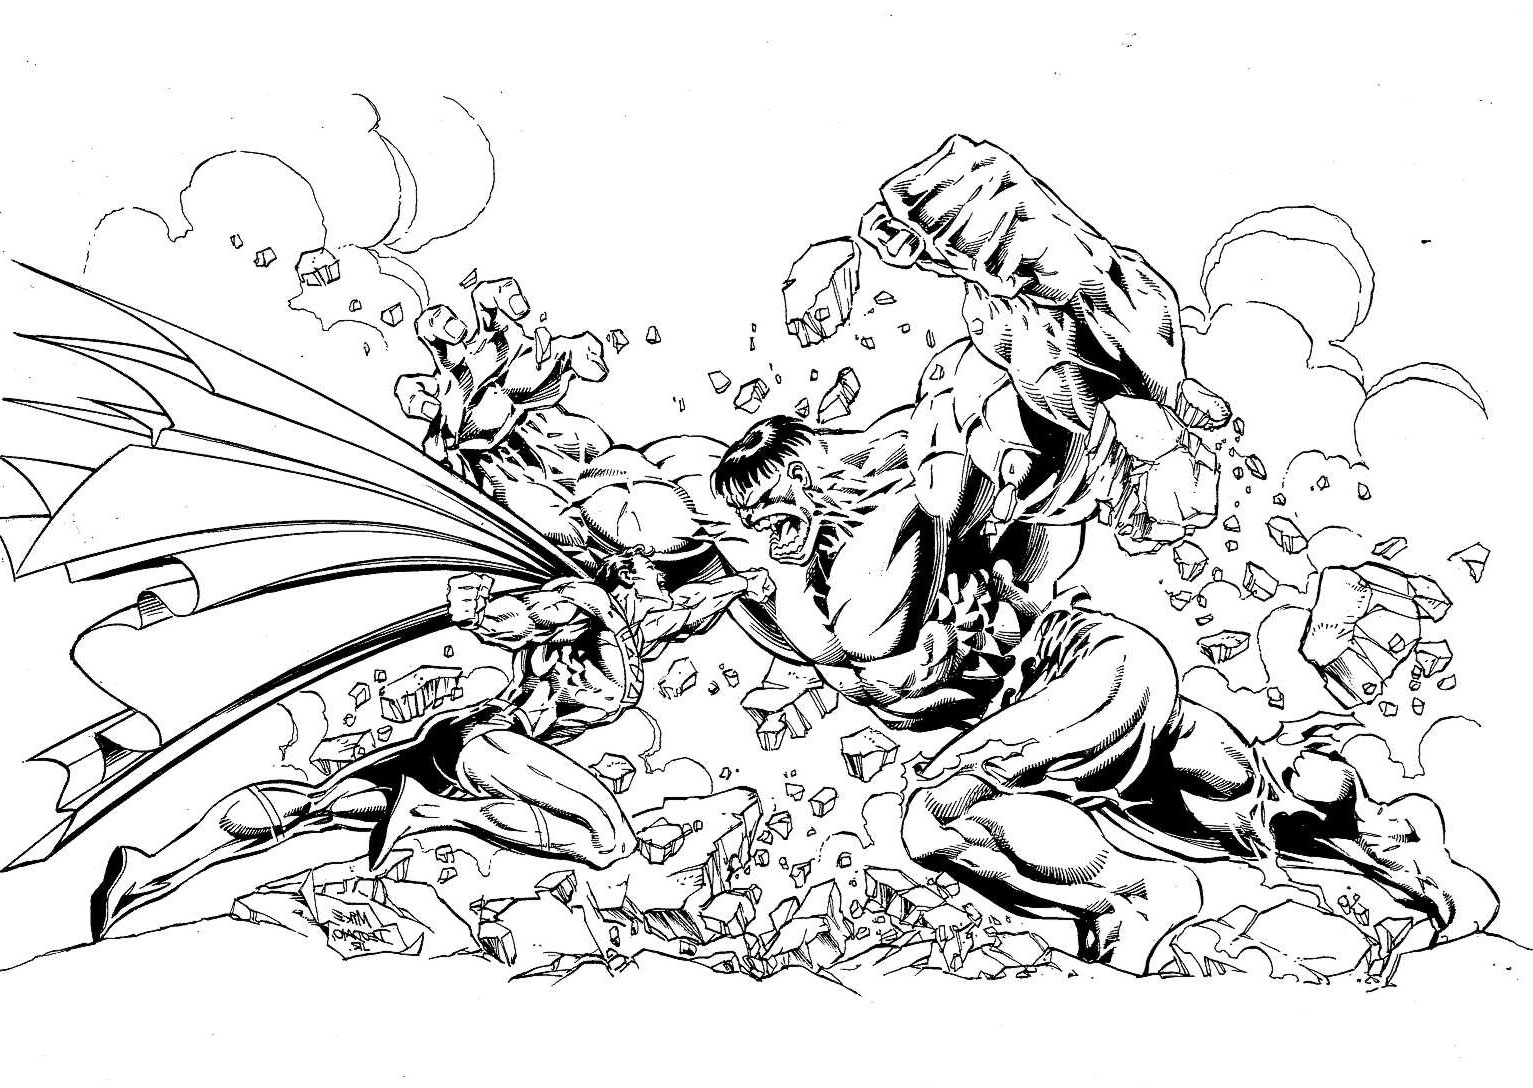 Um combate incrível! Quem é que vai ganhar entre estes dois super heróis? Hulk (da Marvel) ou Superman (da DC Comics) ?